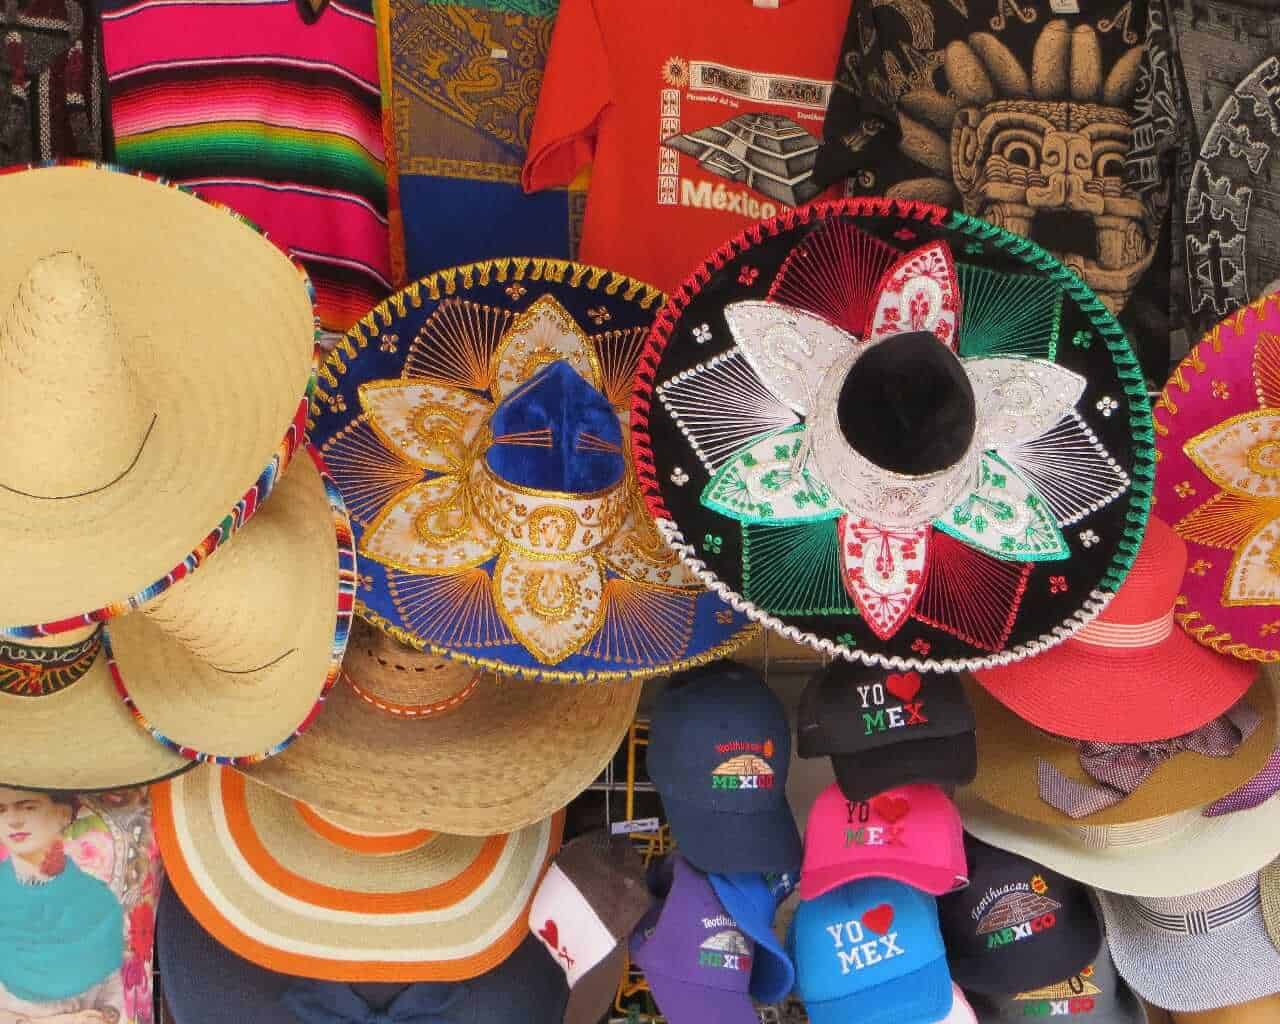 Sombrero - souvenir from Mexico